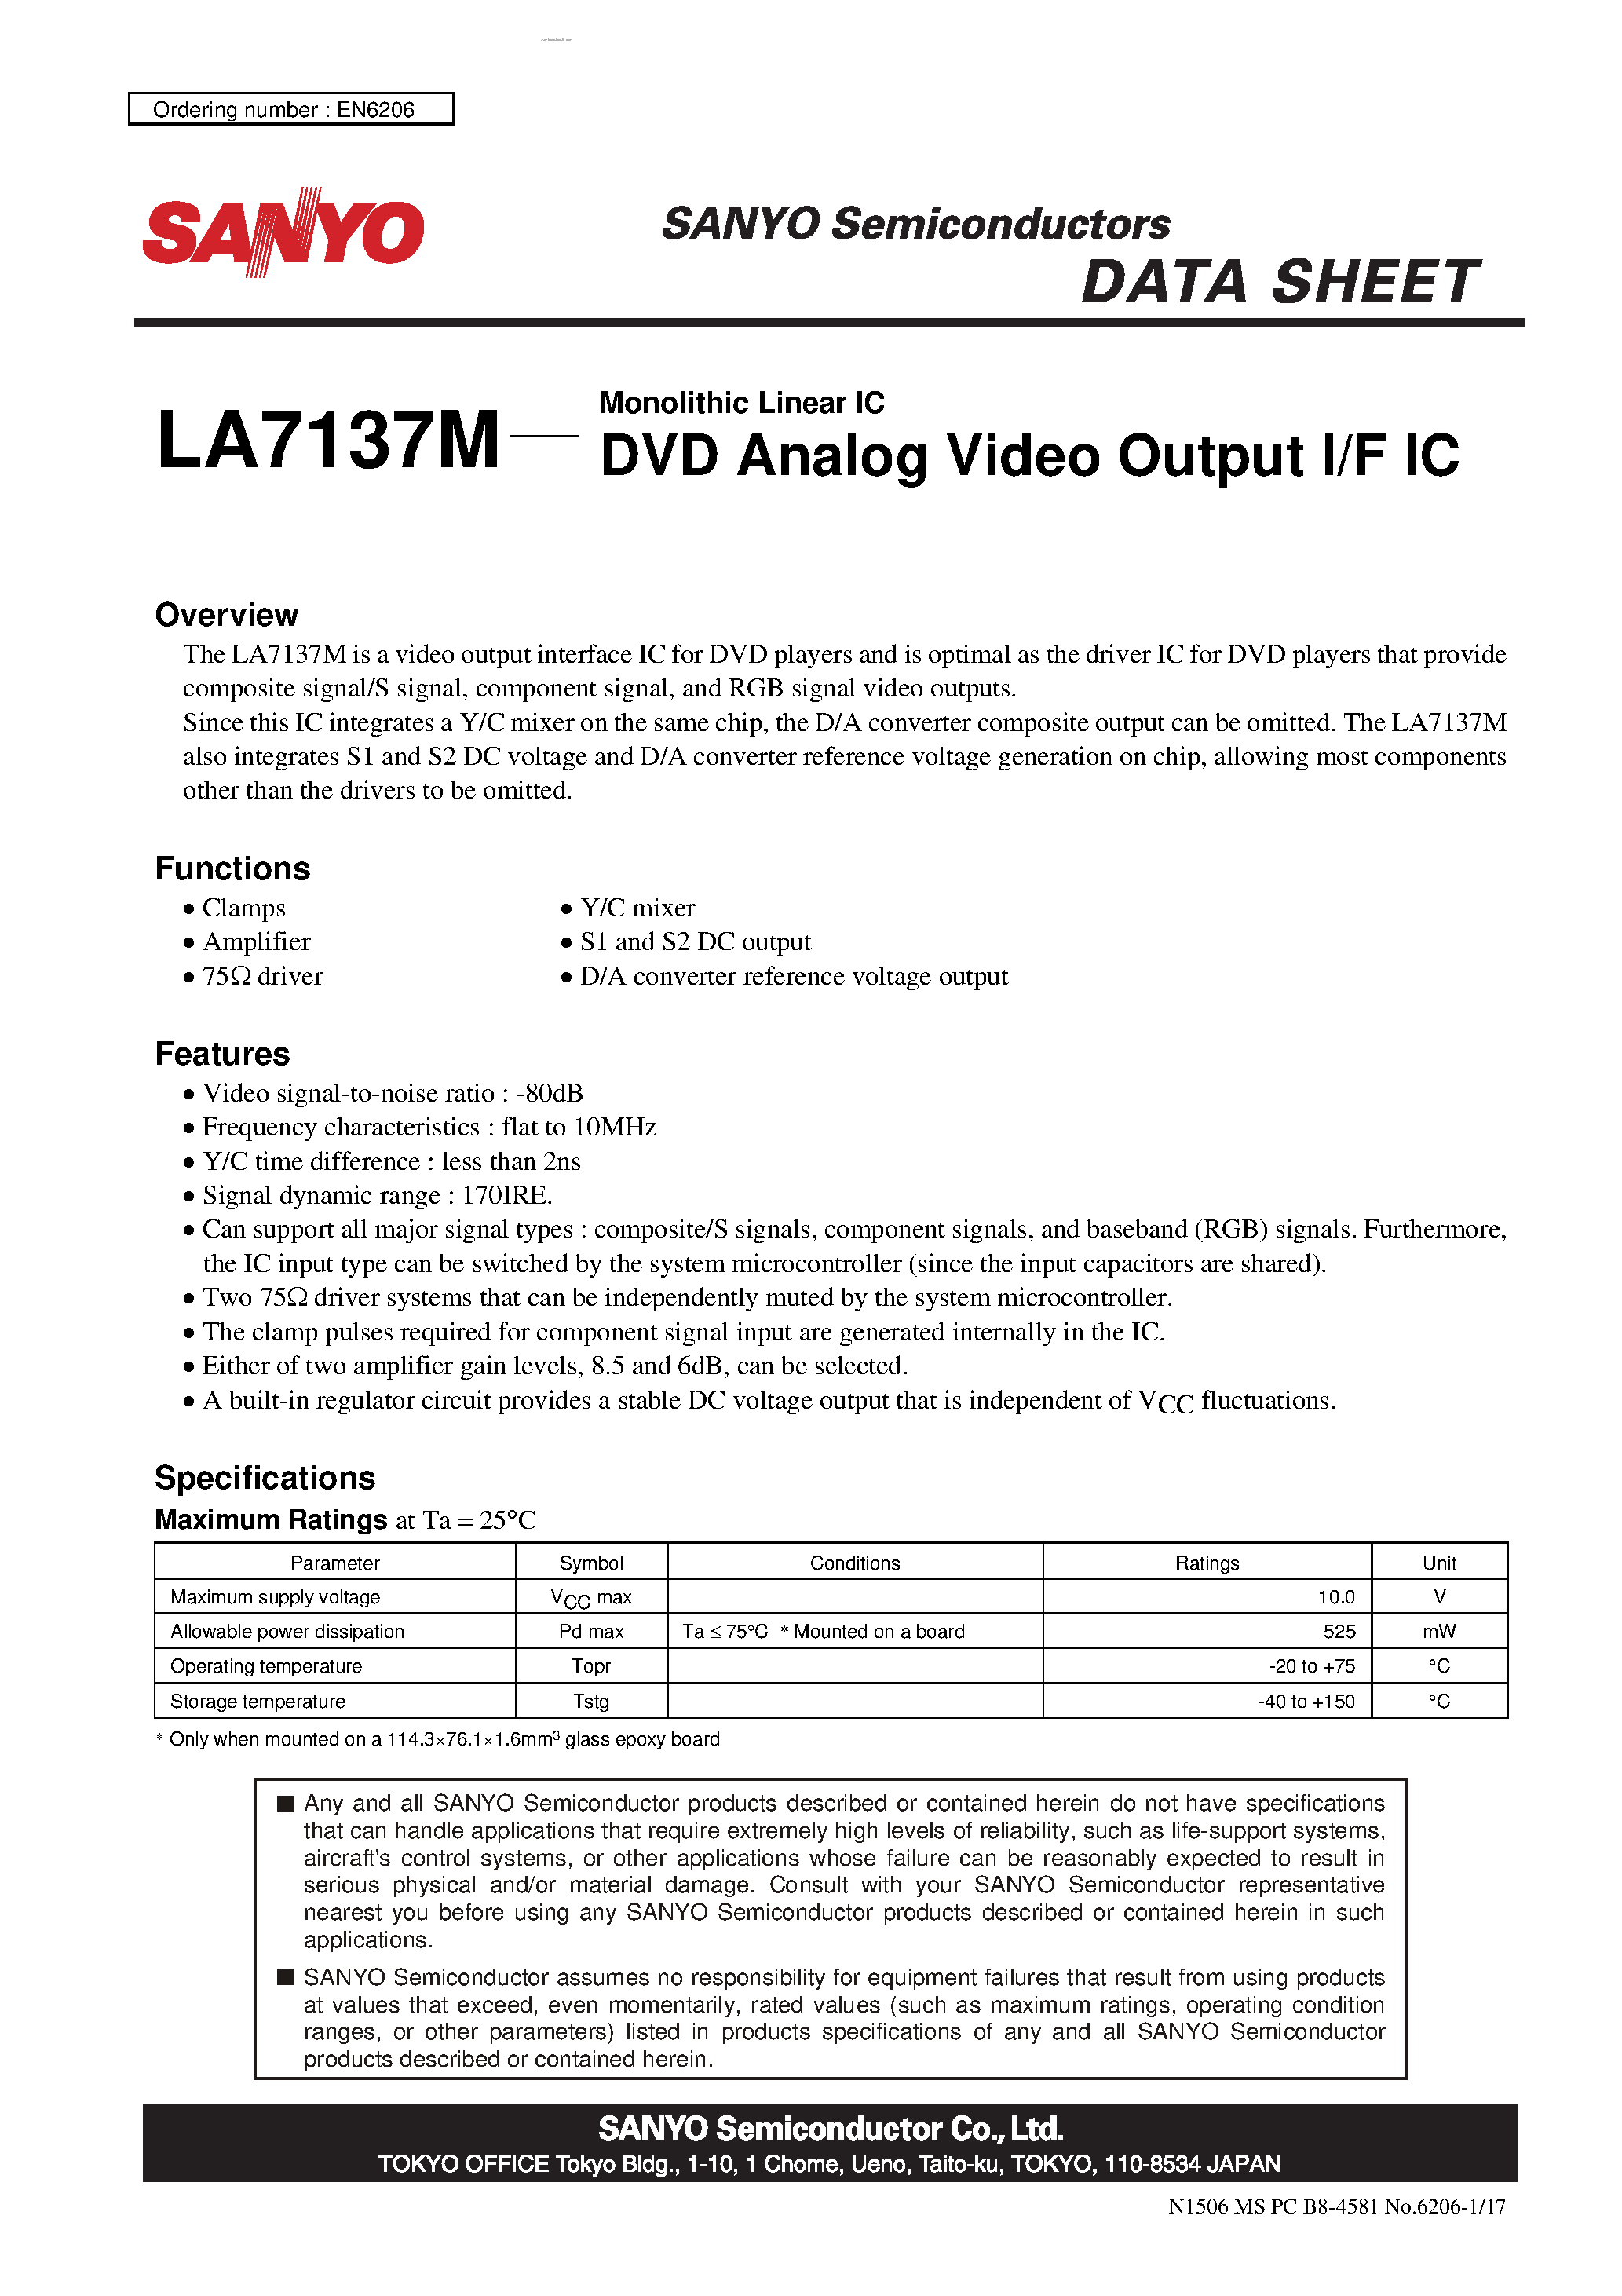 Даташит LA7137M - DVD Analog Video Outpit I/F IC страница 1